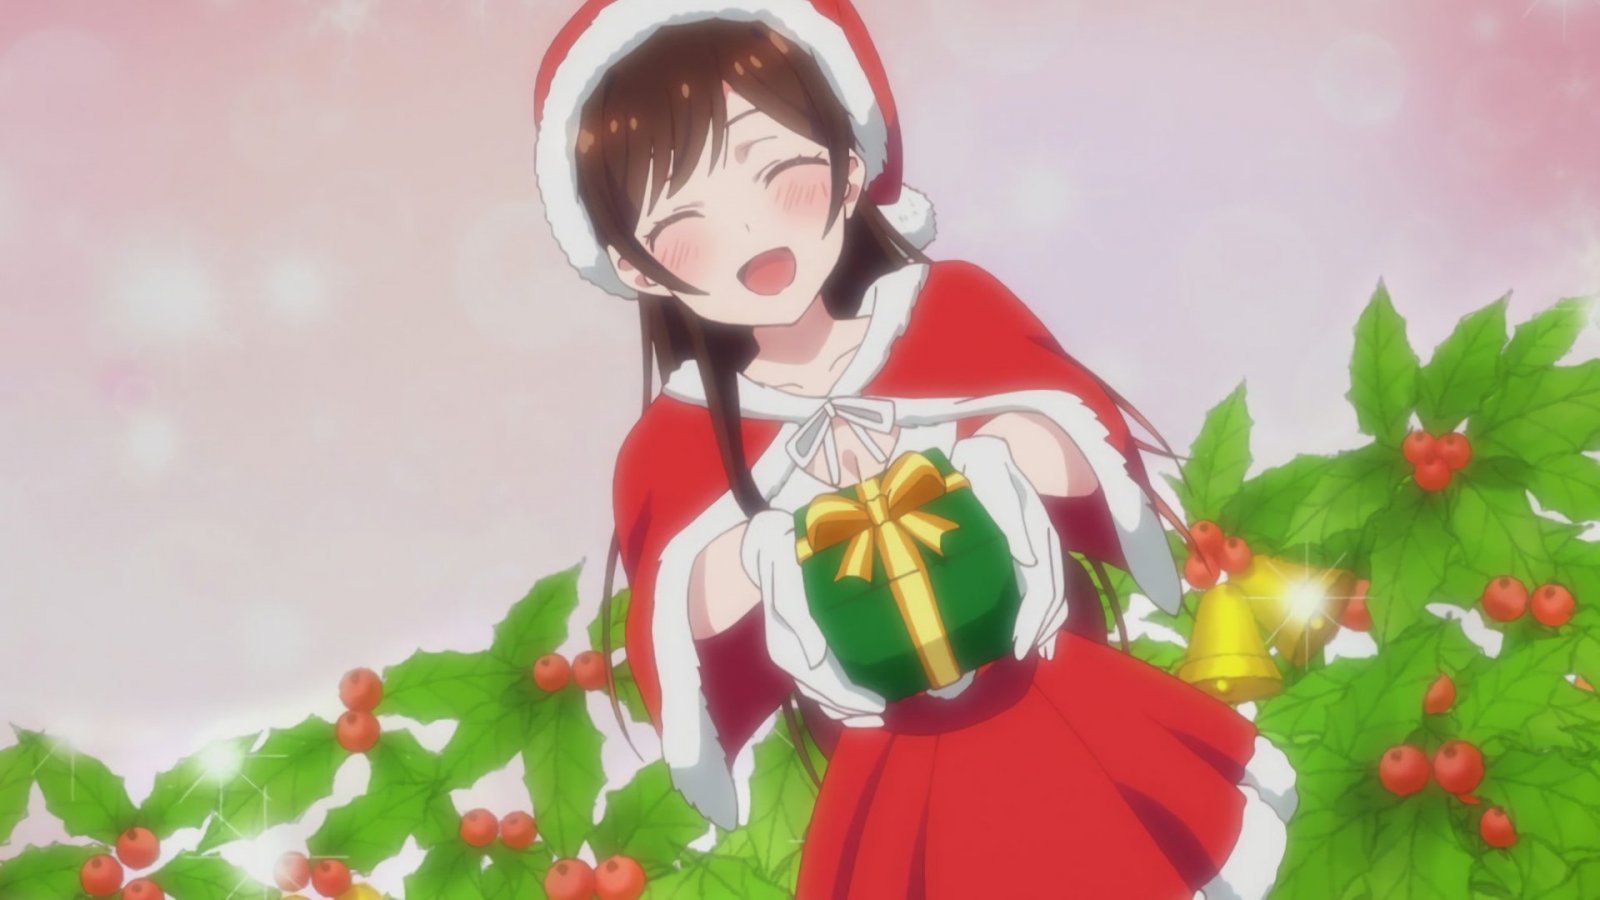 Rent a Girlfriend, il cosplay di Chizuru da nymphahri ci ricorda che è Natale